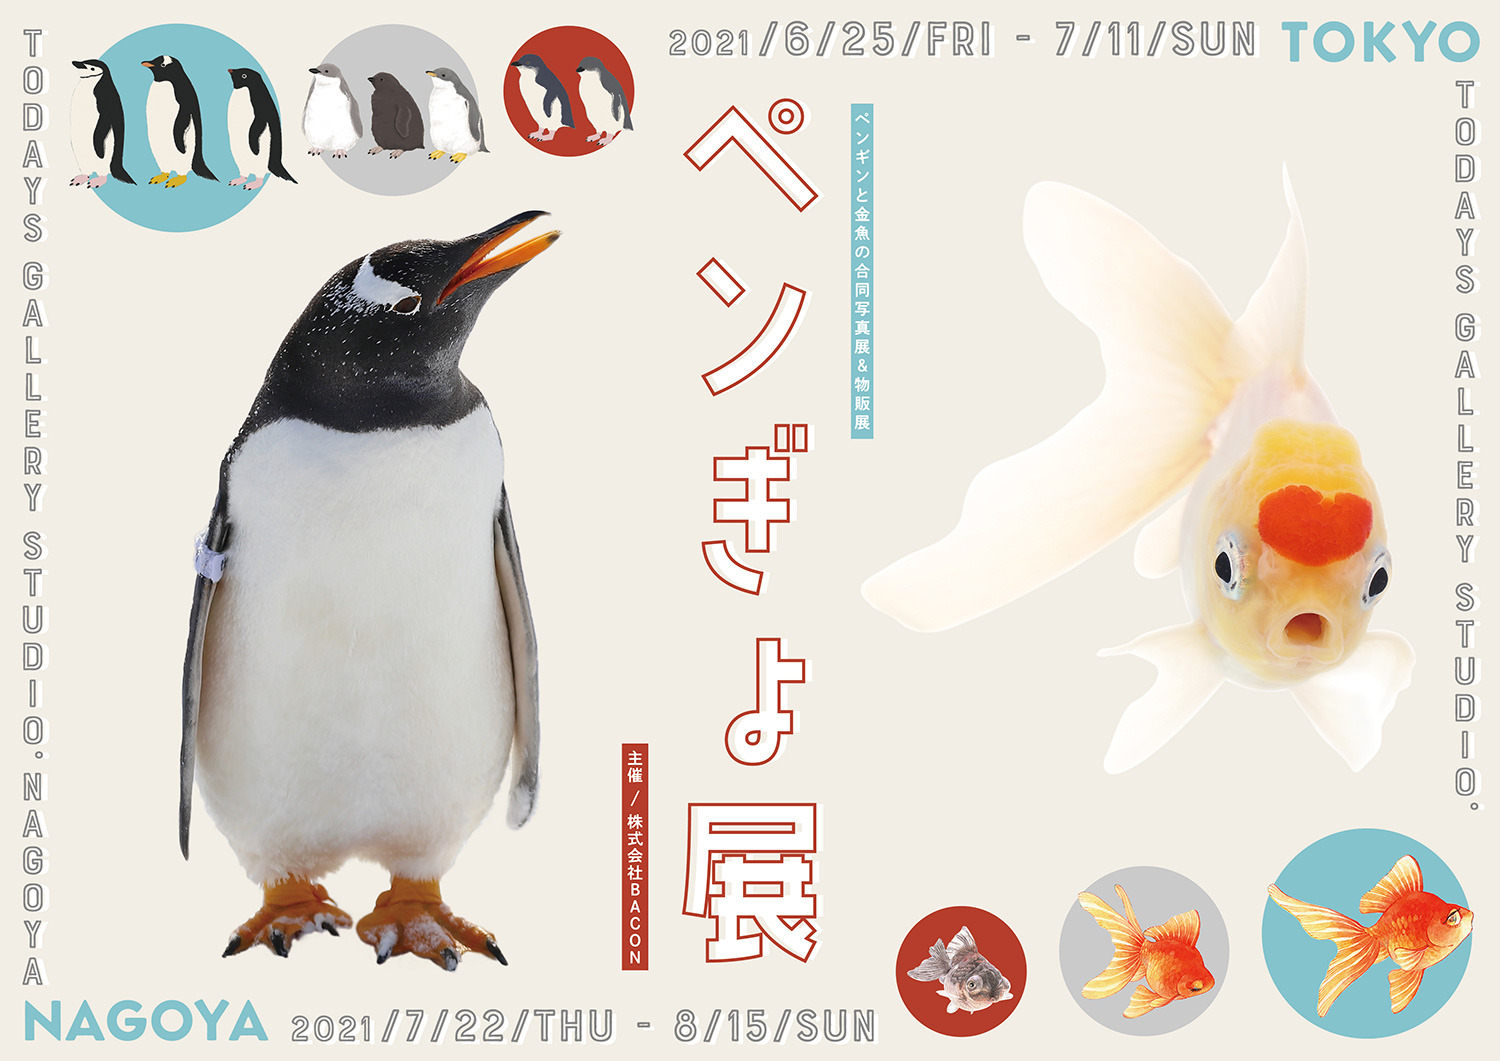 ペンギンと金魚の合同写真展 イラスト物販展 ペンぎょ展 21 東京と名古屋で開催 動物のリアルを伝えるwebメディア Reanimal